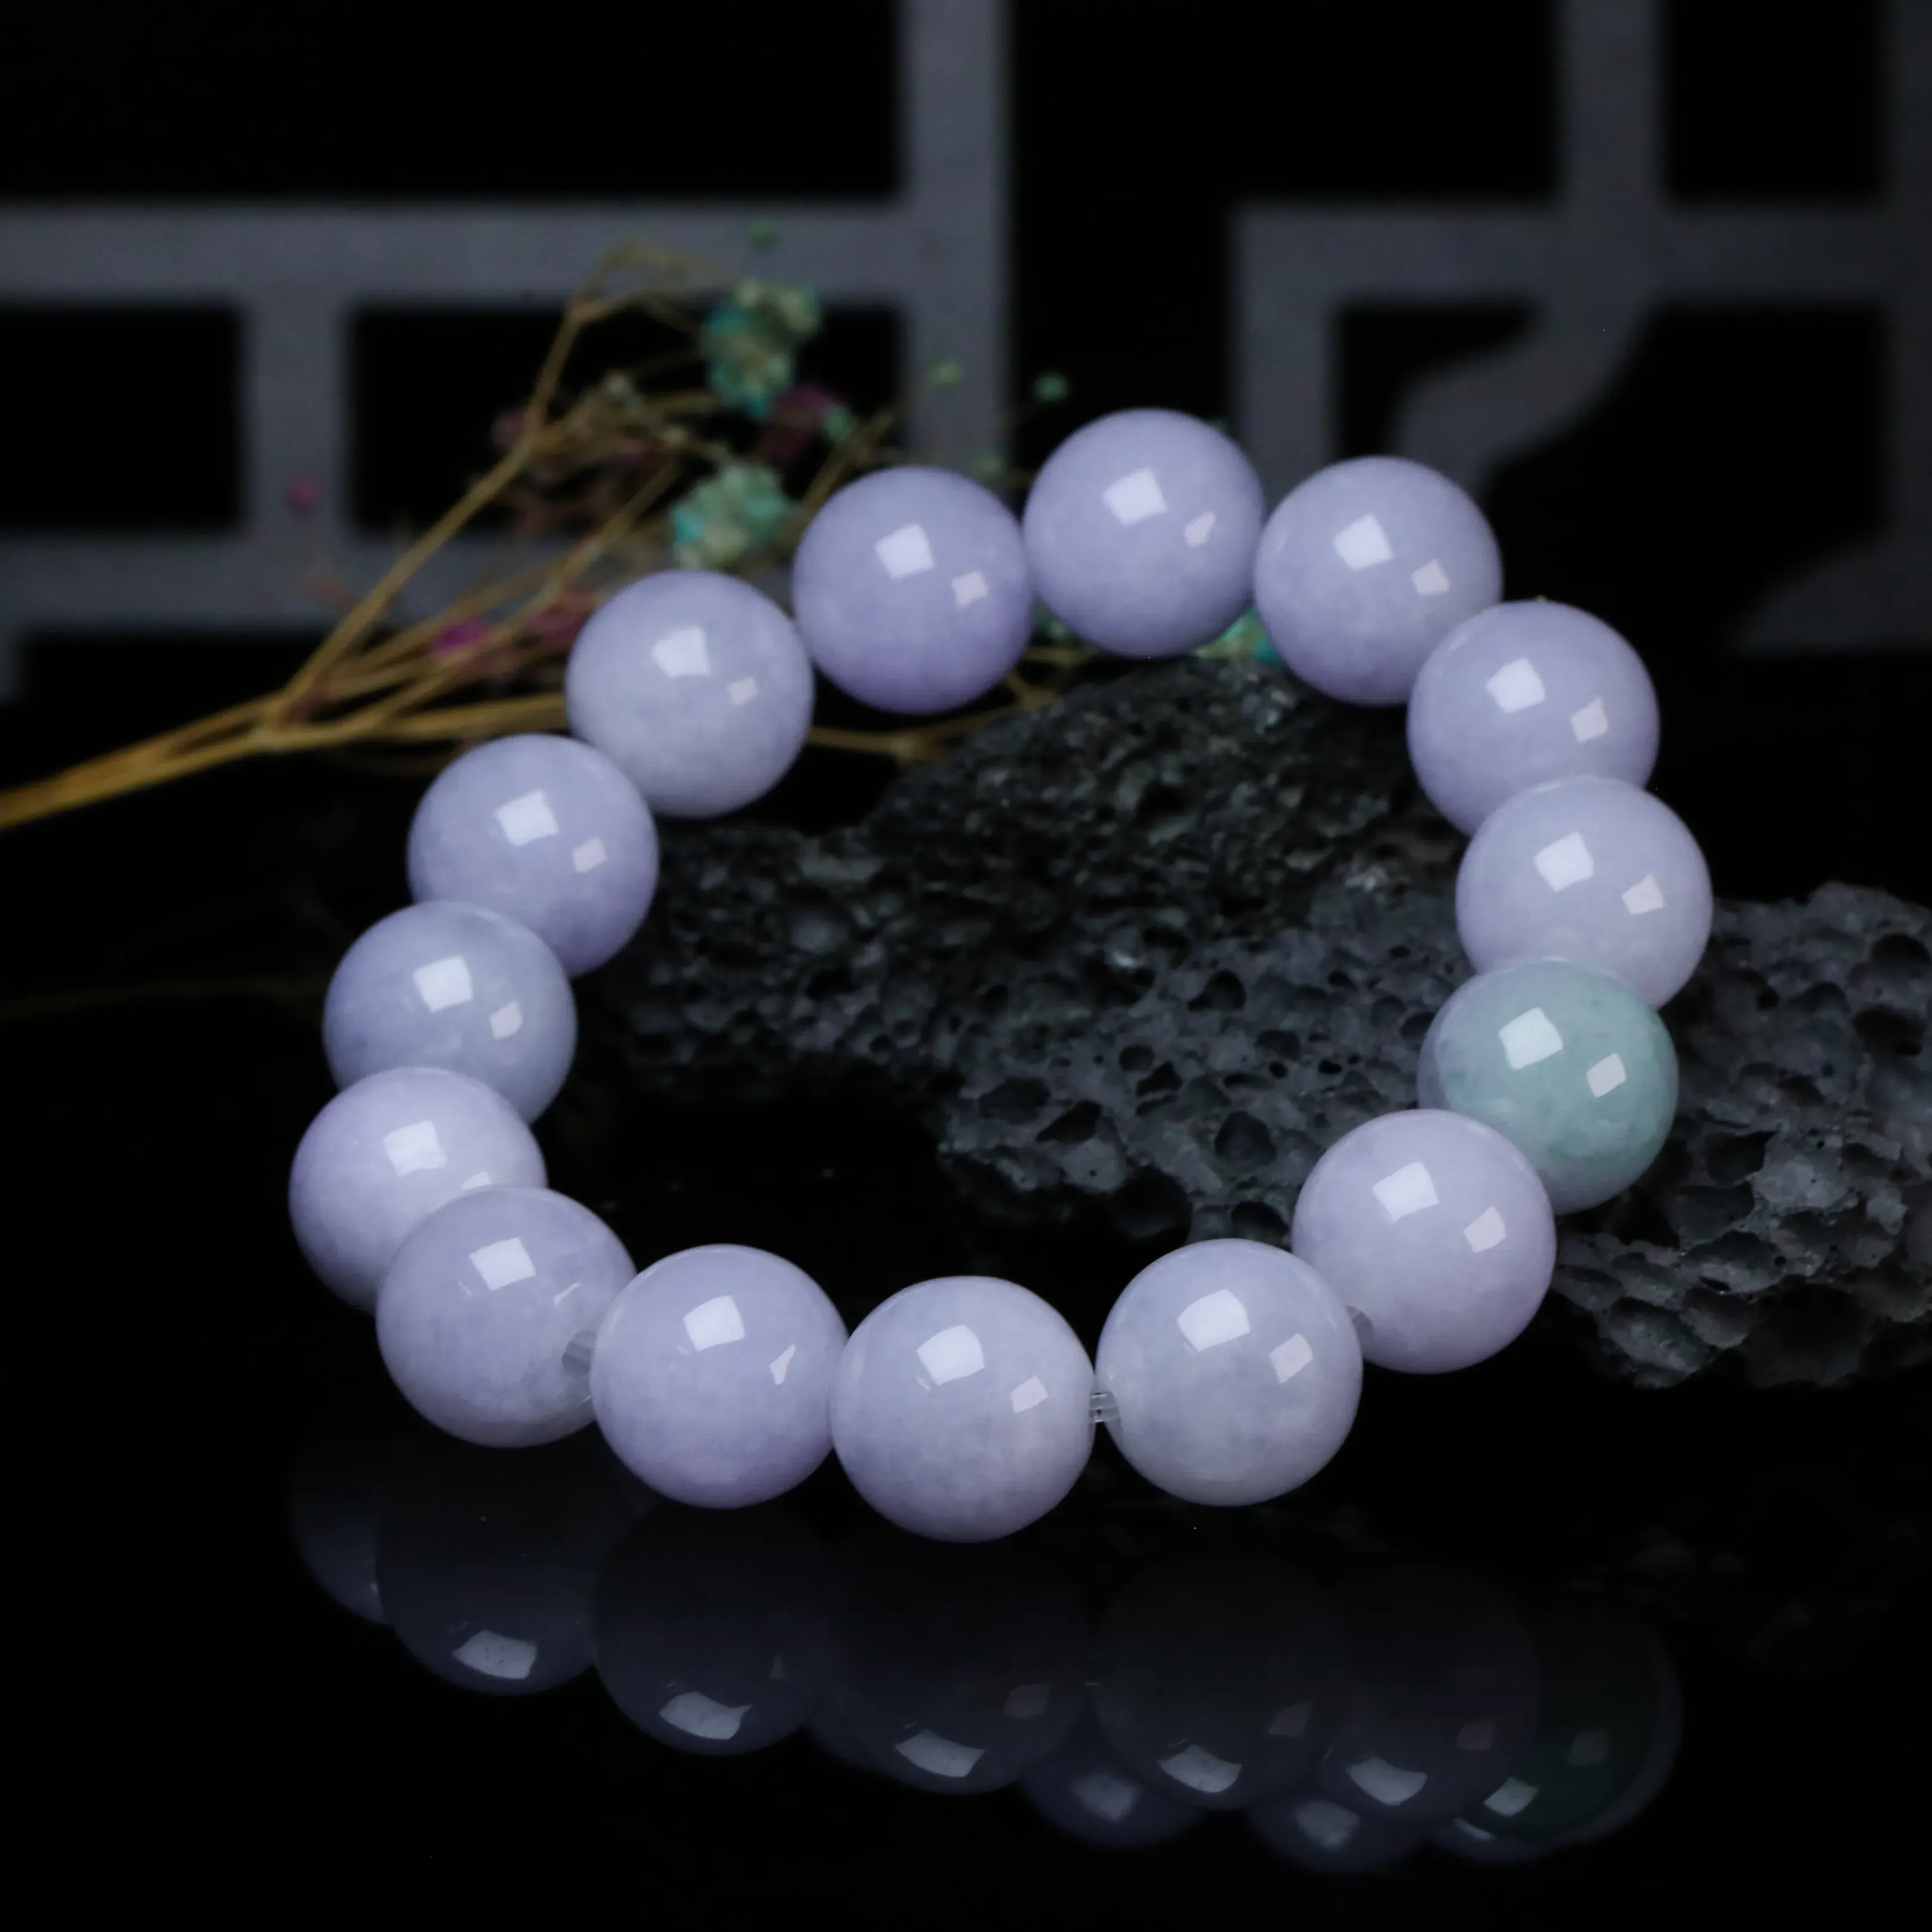 推荐款紫罗兰翡翠圆珠手串。共15颗珠子，取其中一颗珠尺寸大约14mm，亮丽秀气，圆润饱满。上手佩戴效果佳。